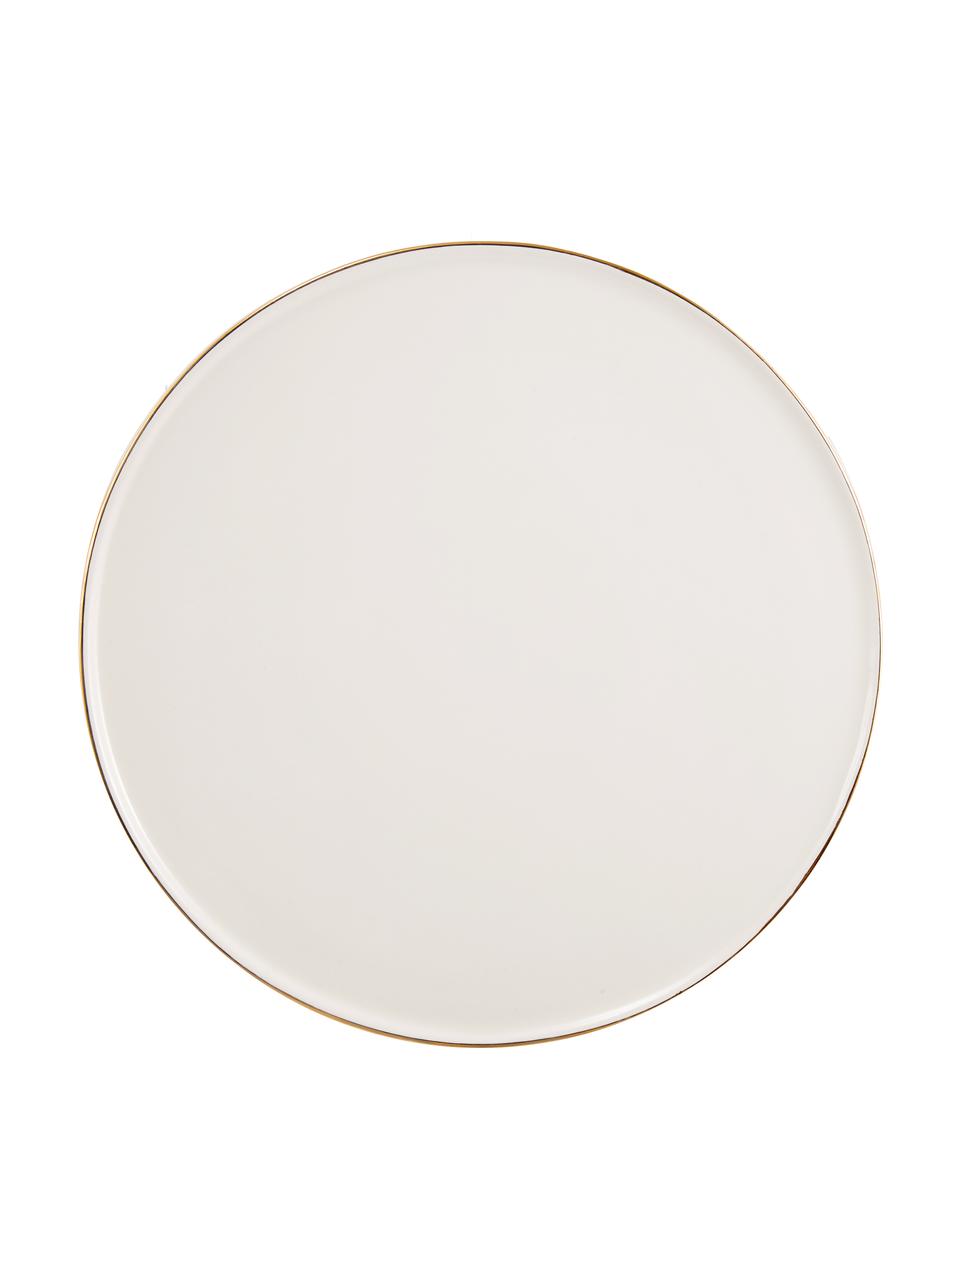 Plat à gâteau artisanal céramique Allure, Céramique, Blanc, couleur dorée, Ø 28 x haut. 8 cm